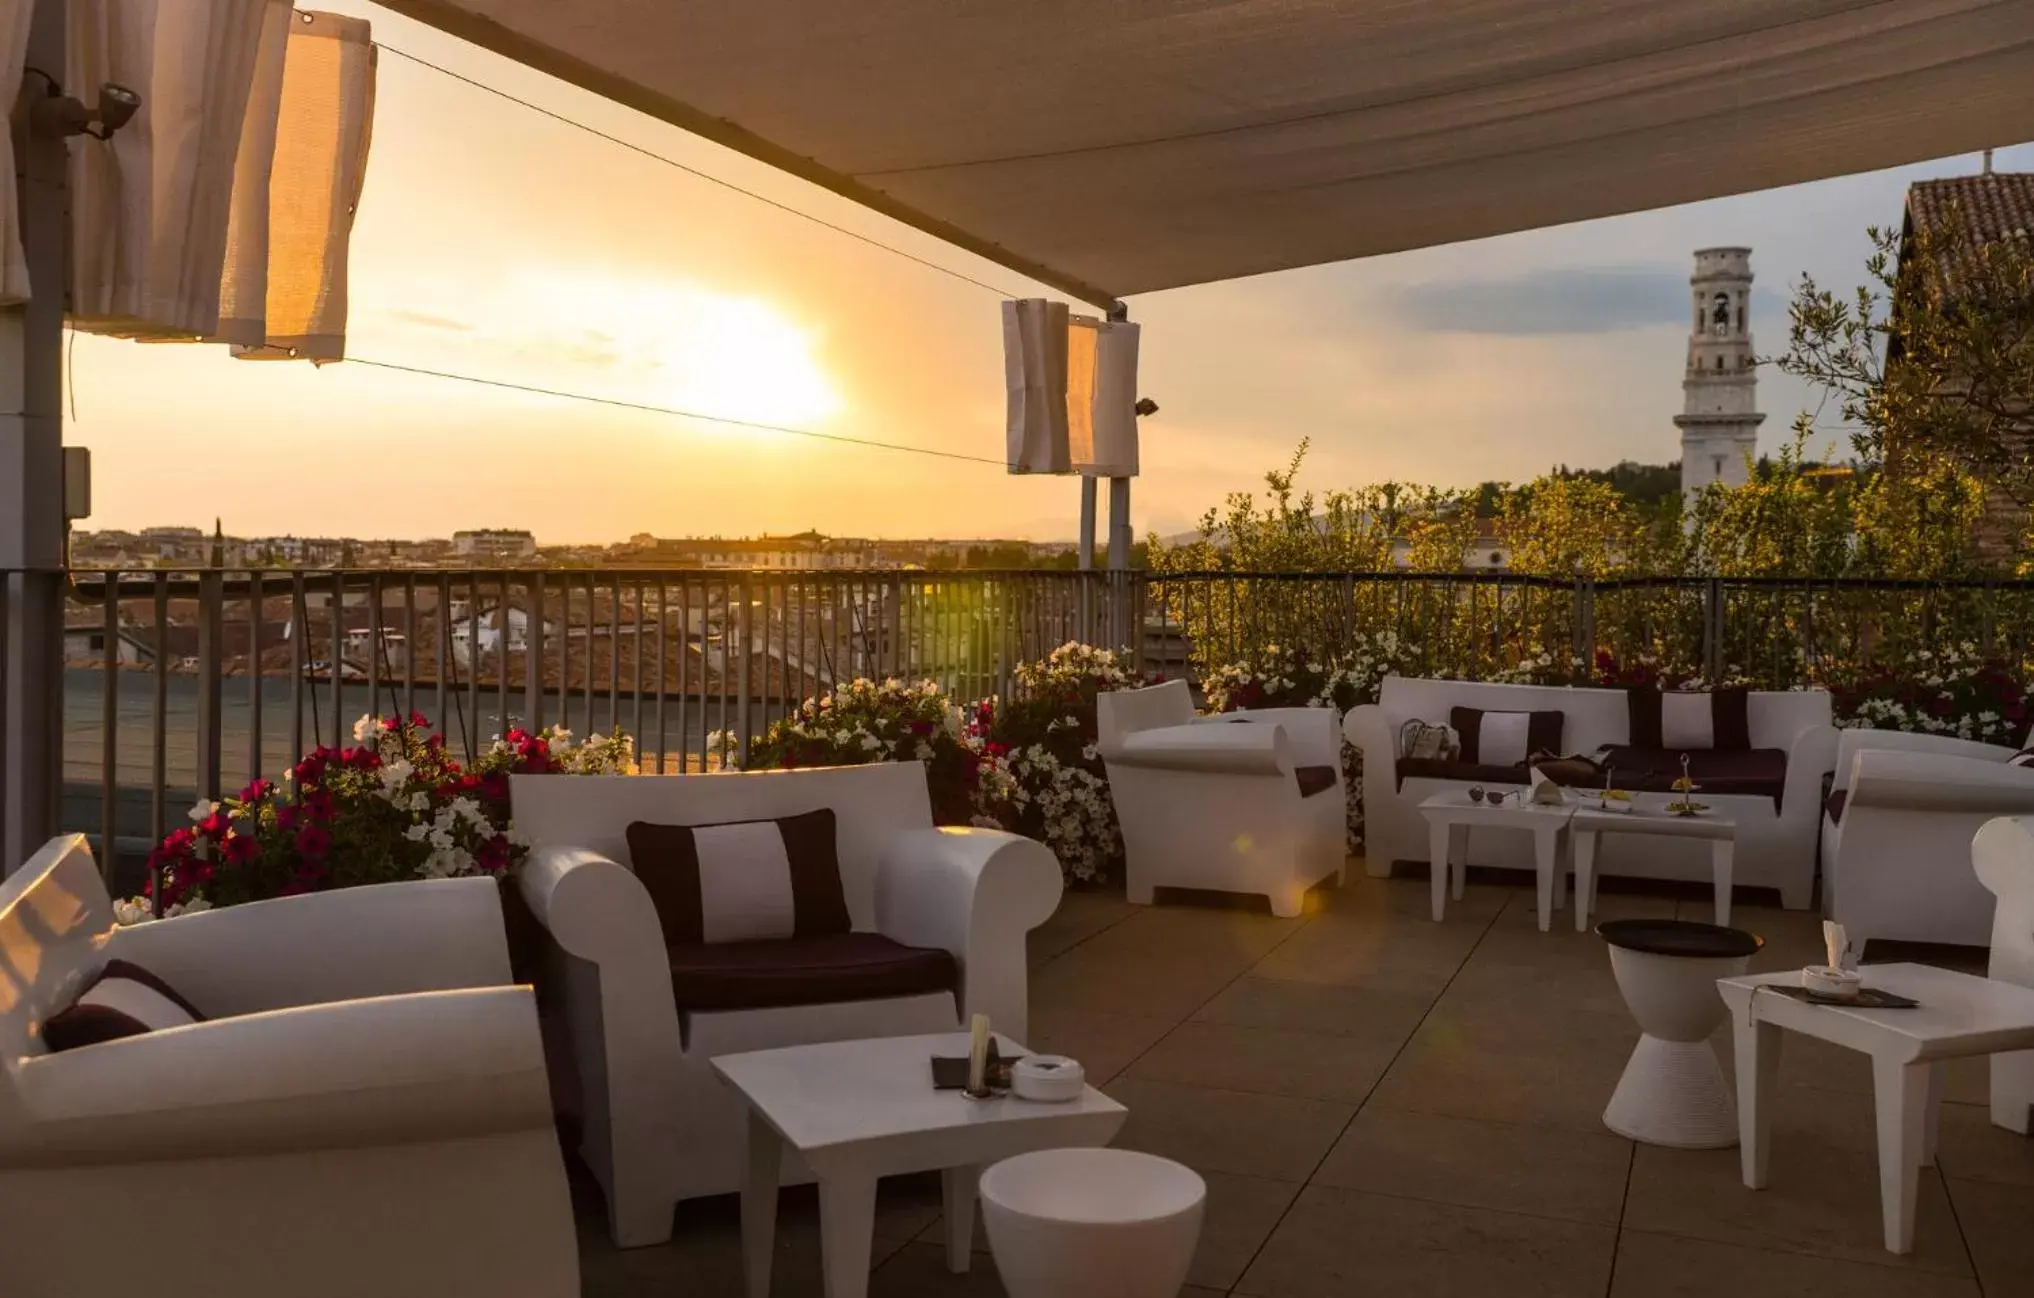 Restaurant/places to eat, Sunrise/Sunset in Due Torri Hotel